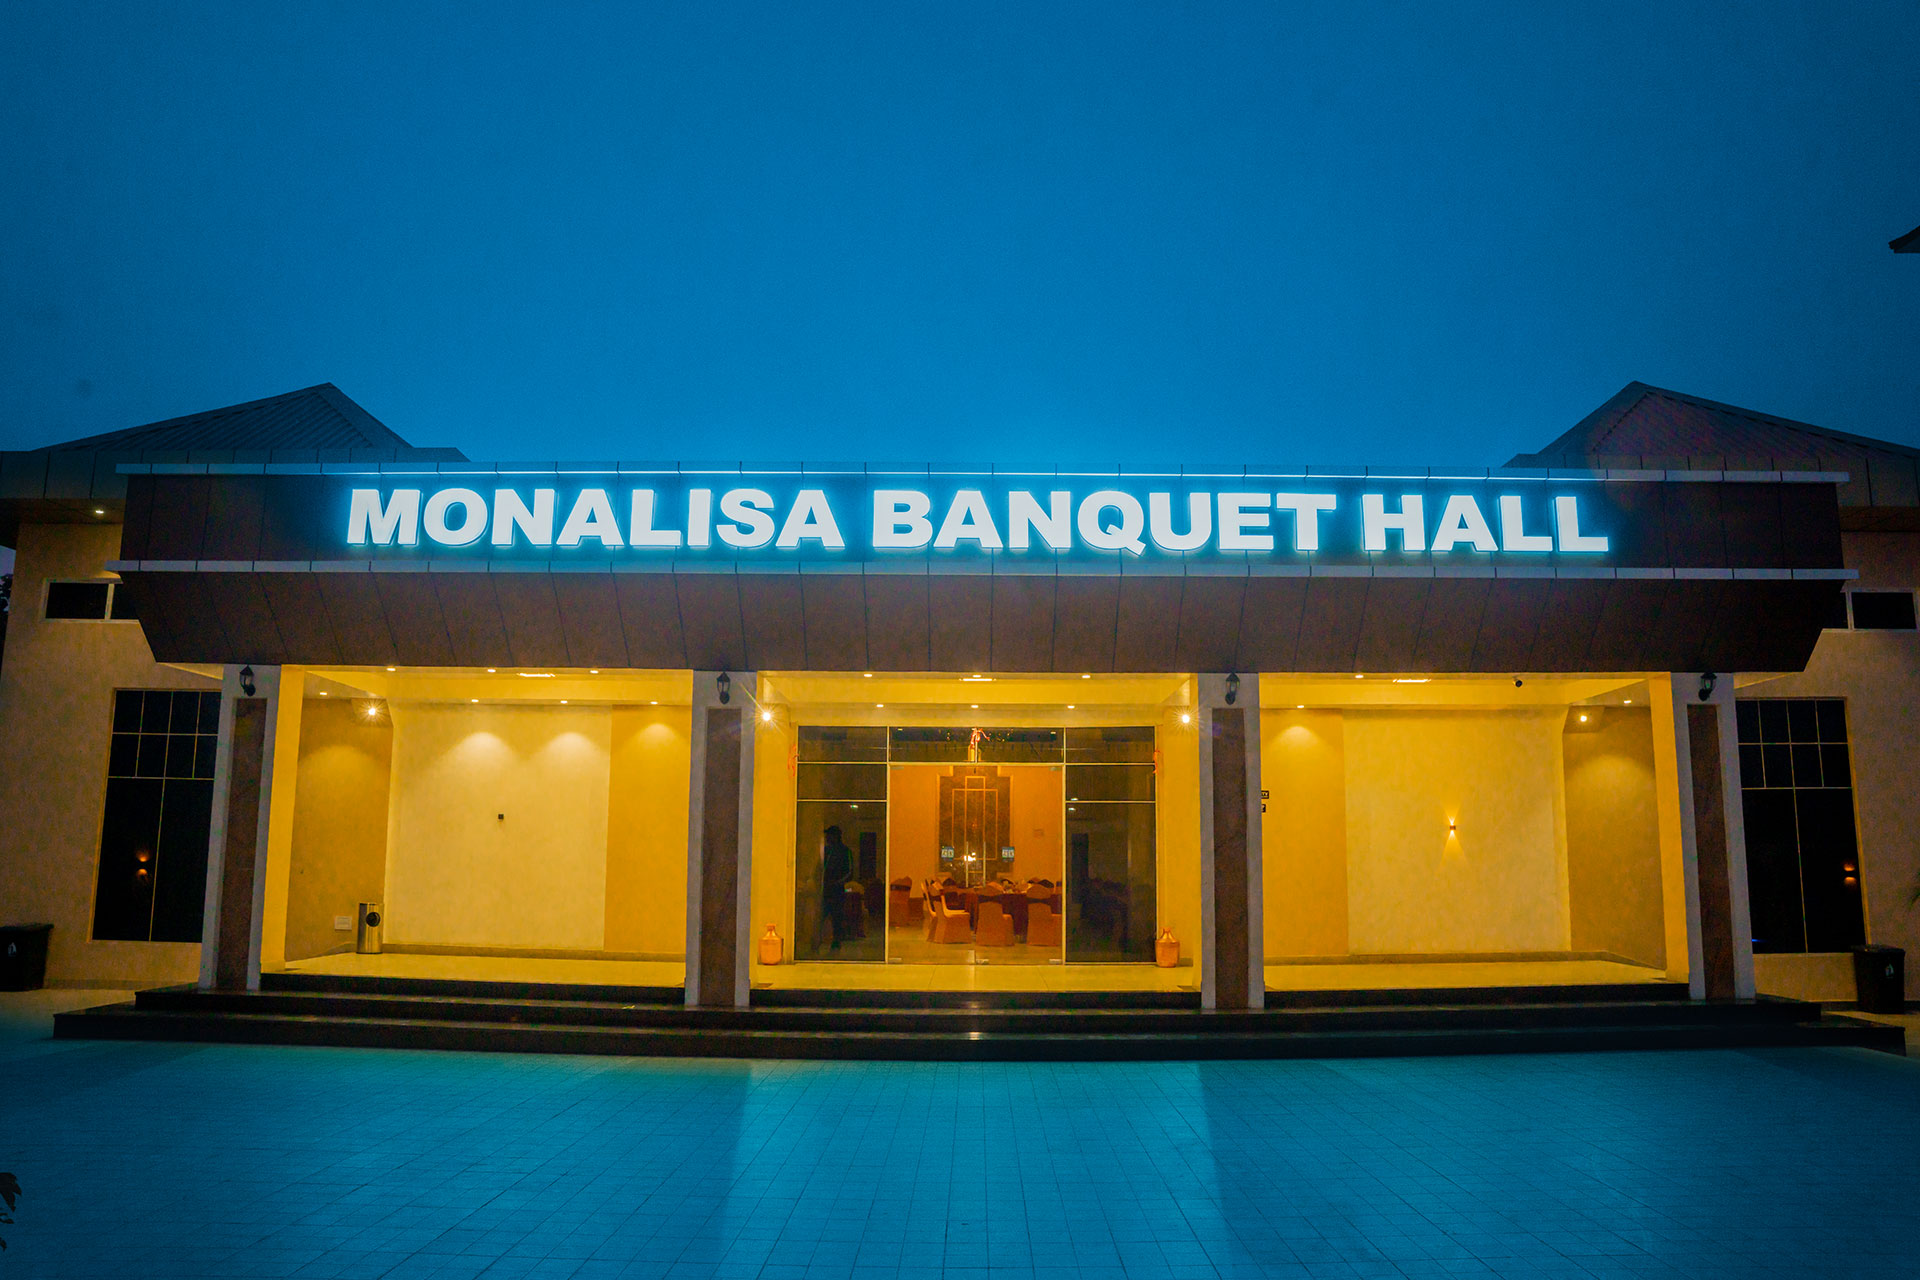 Monalisa Banquet Hall